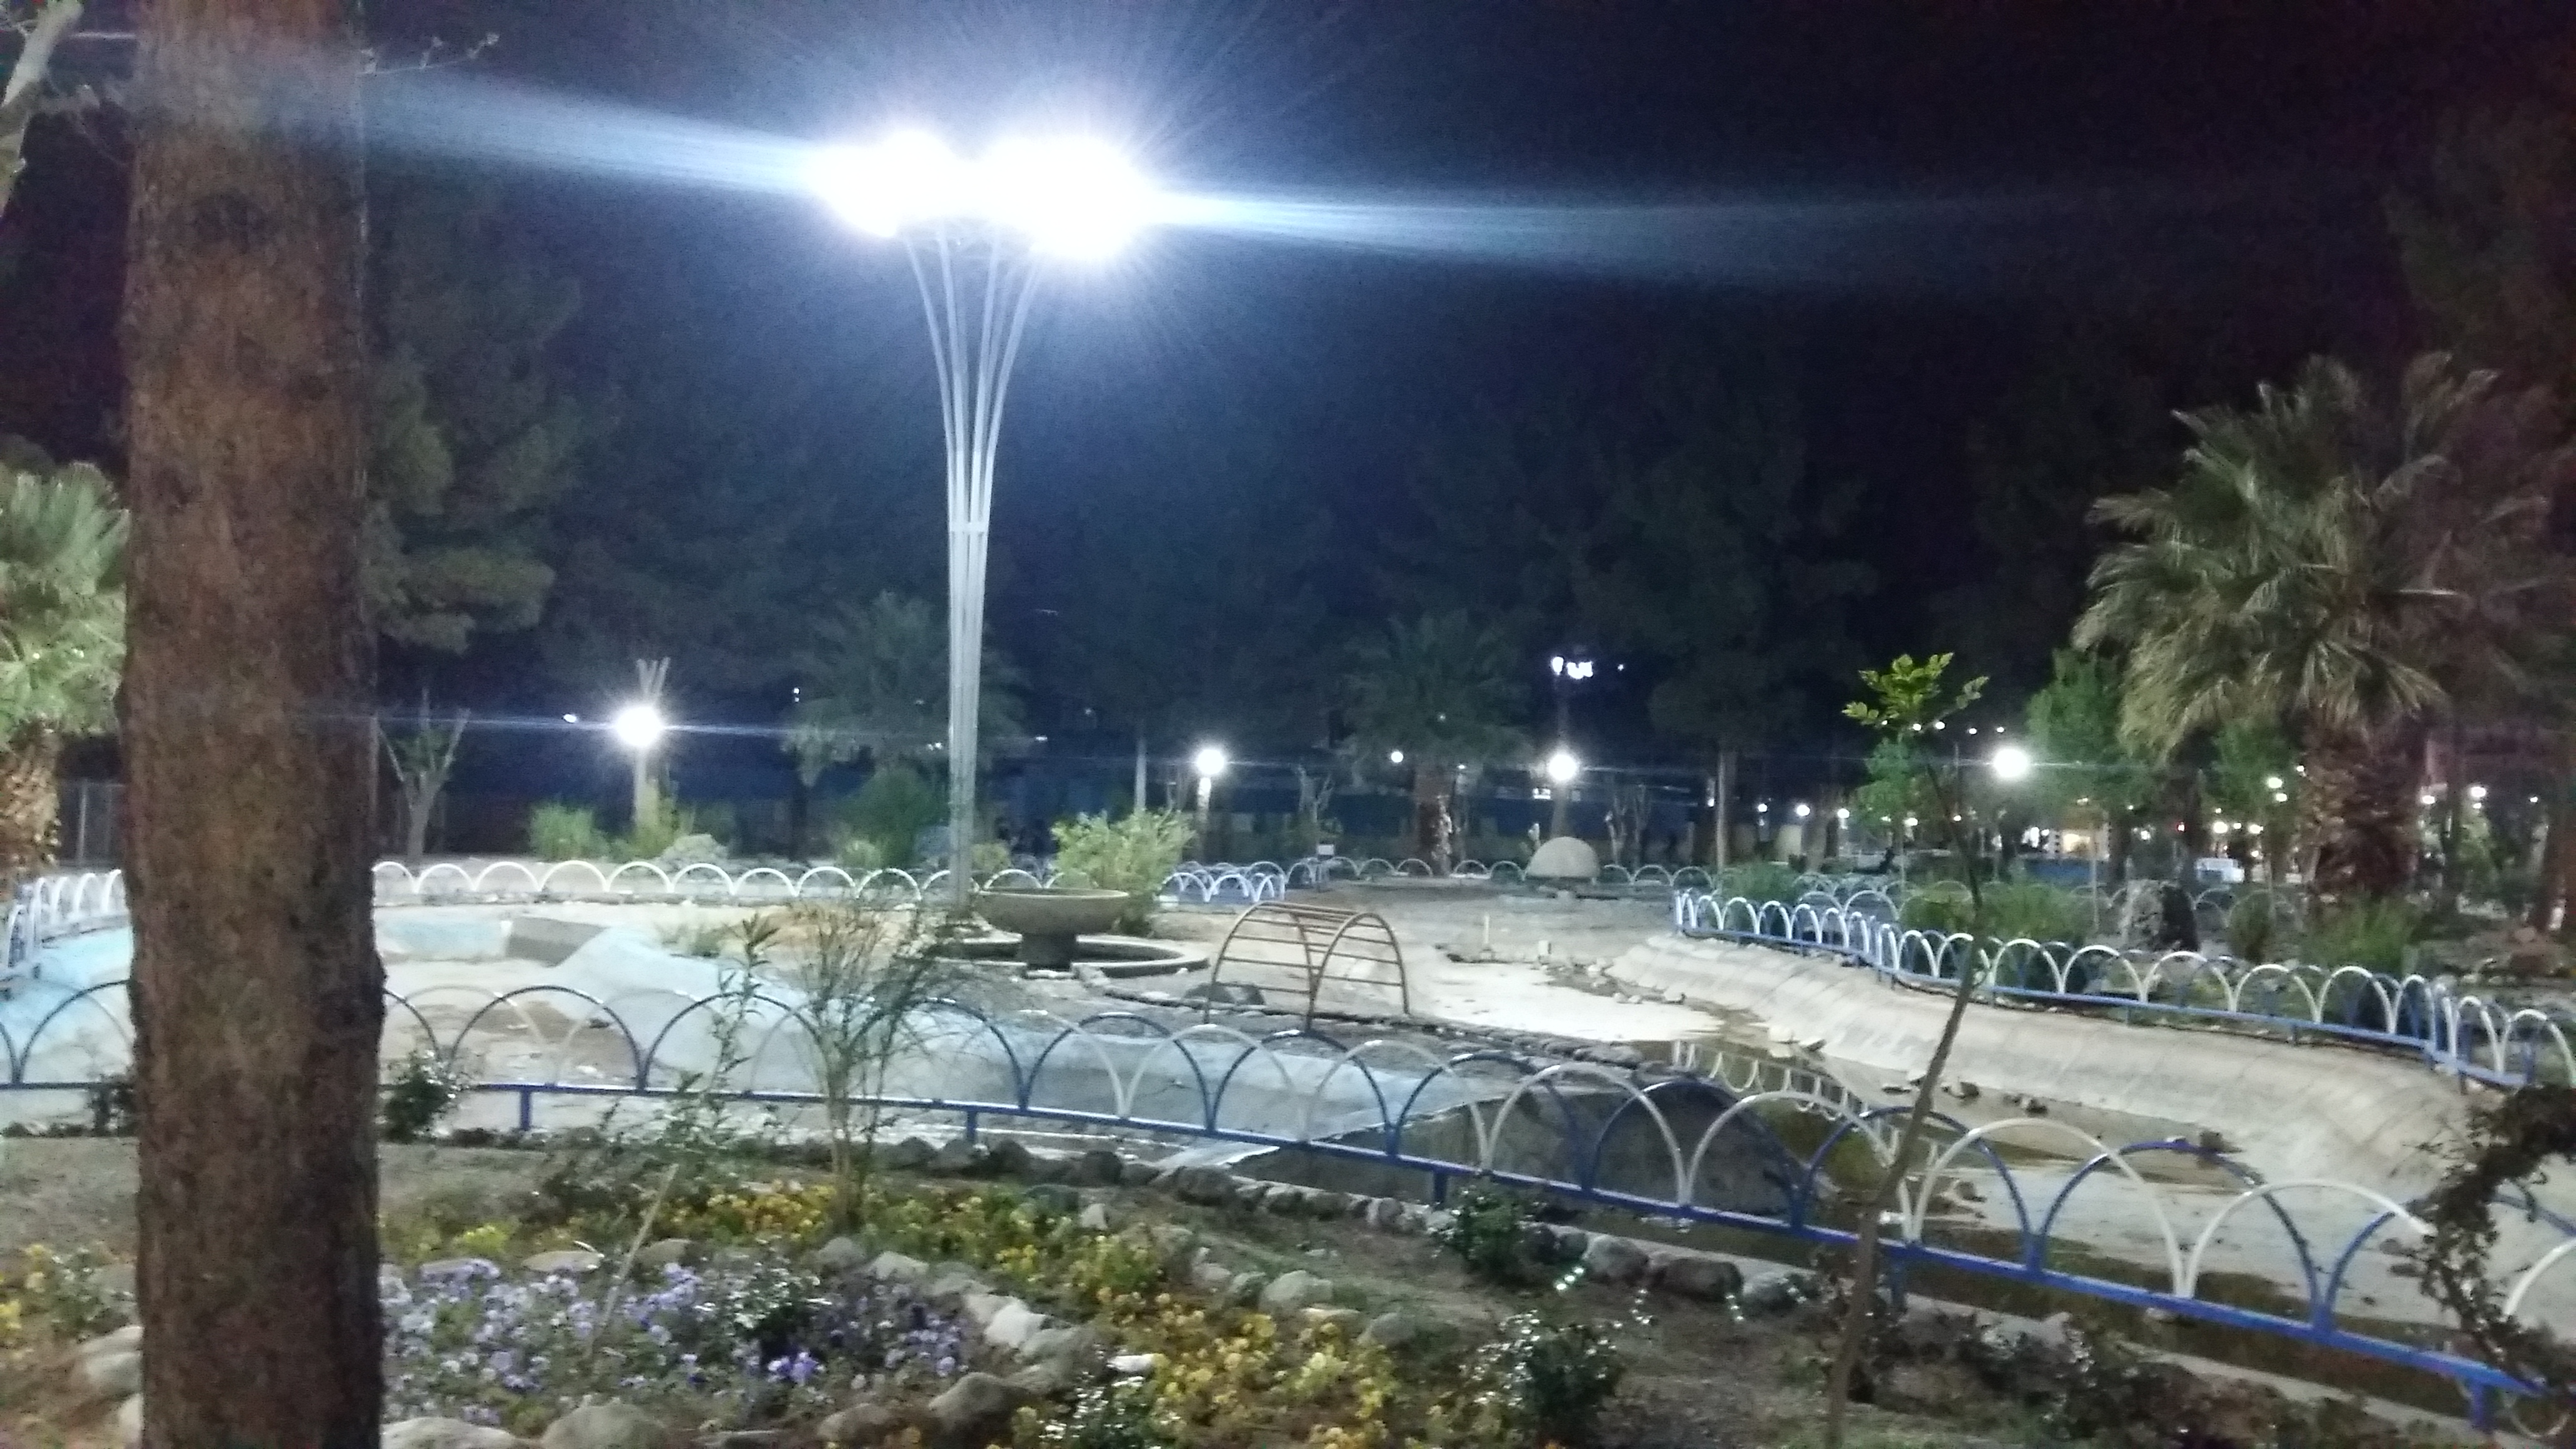 پروژه روشنایی پارک مطهری استان کرمان(شرکت صنایع سبز)